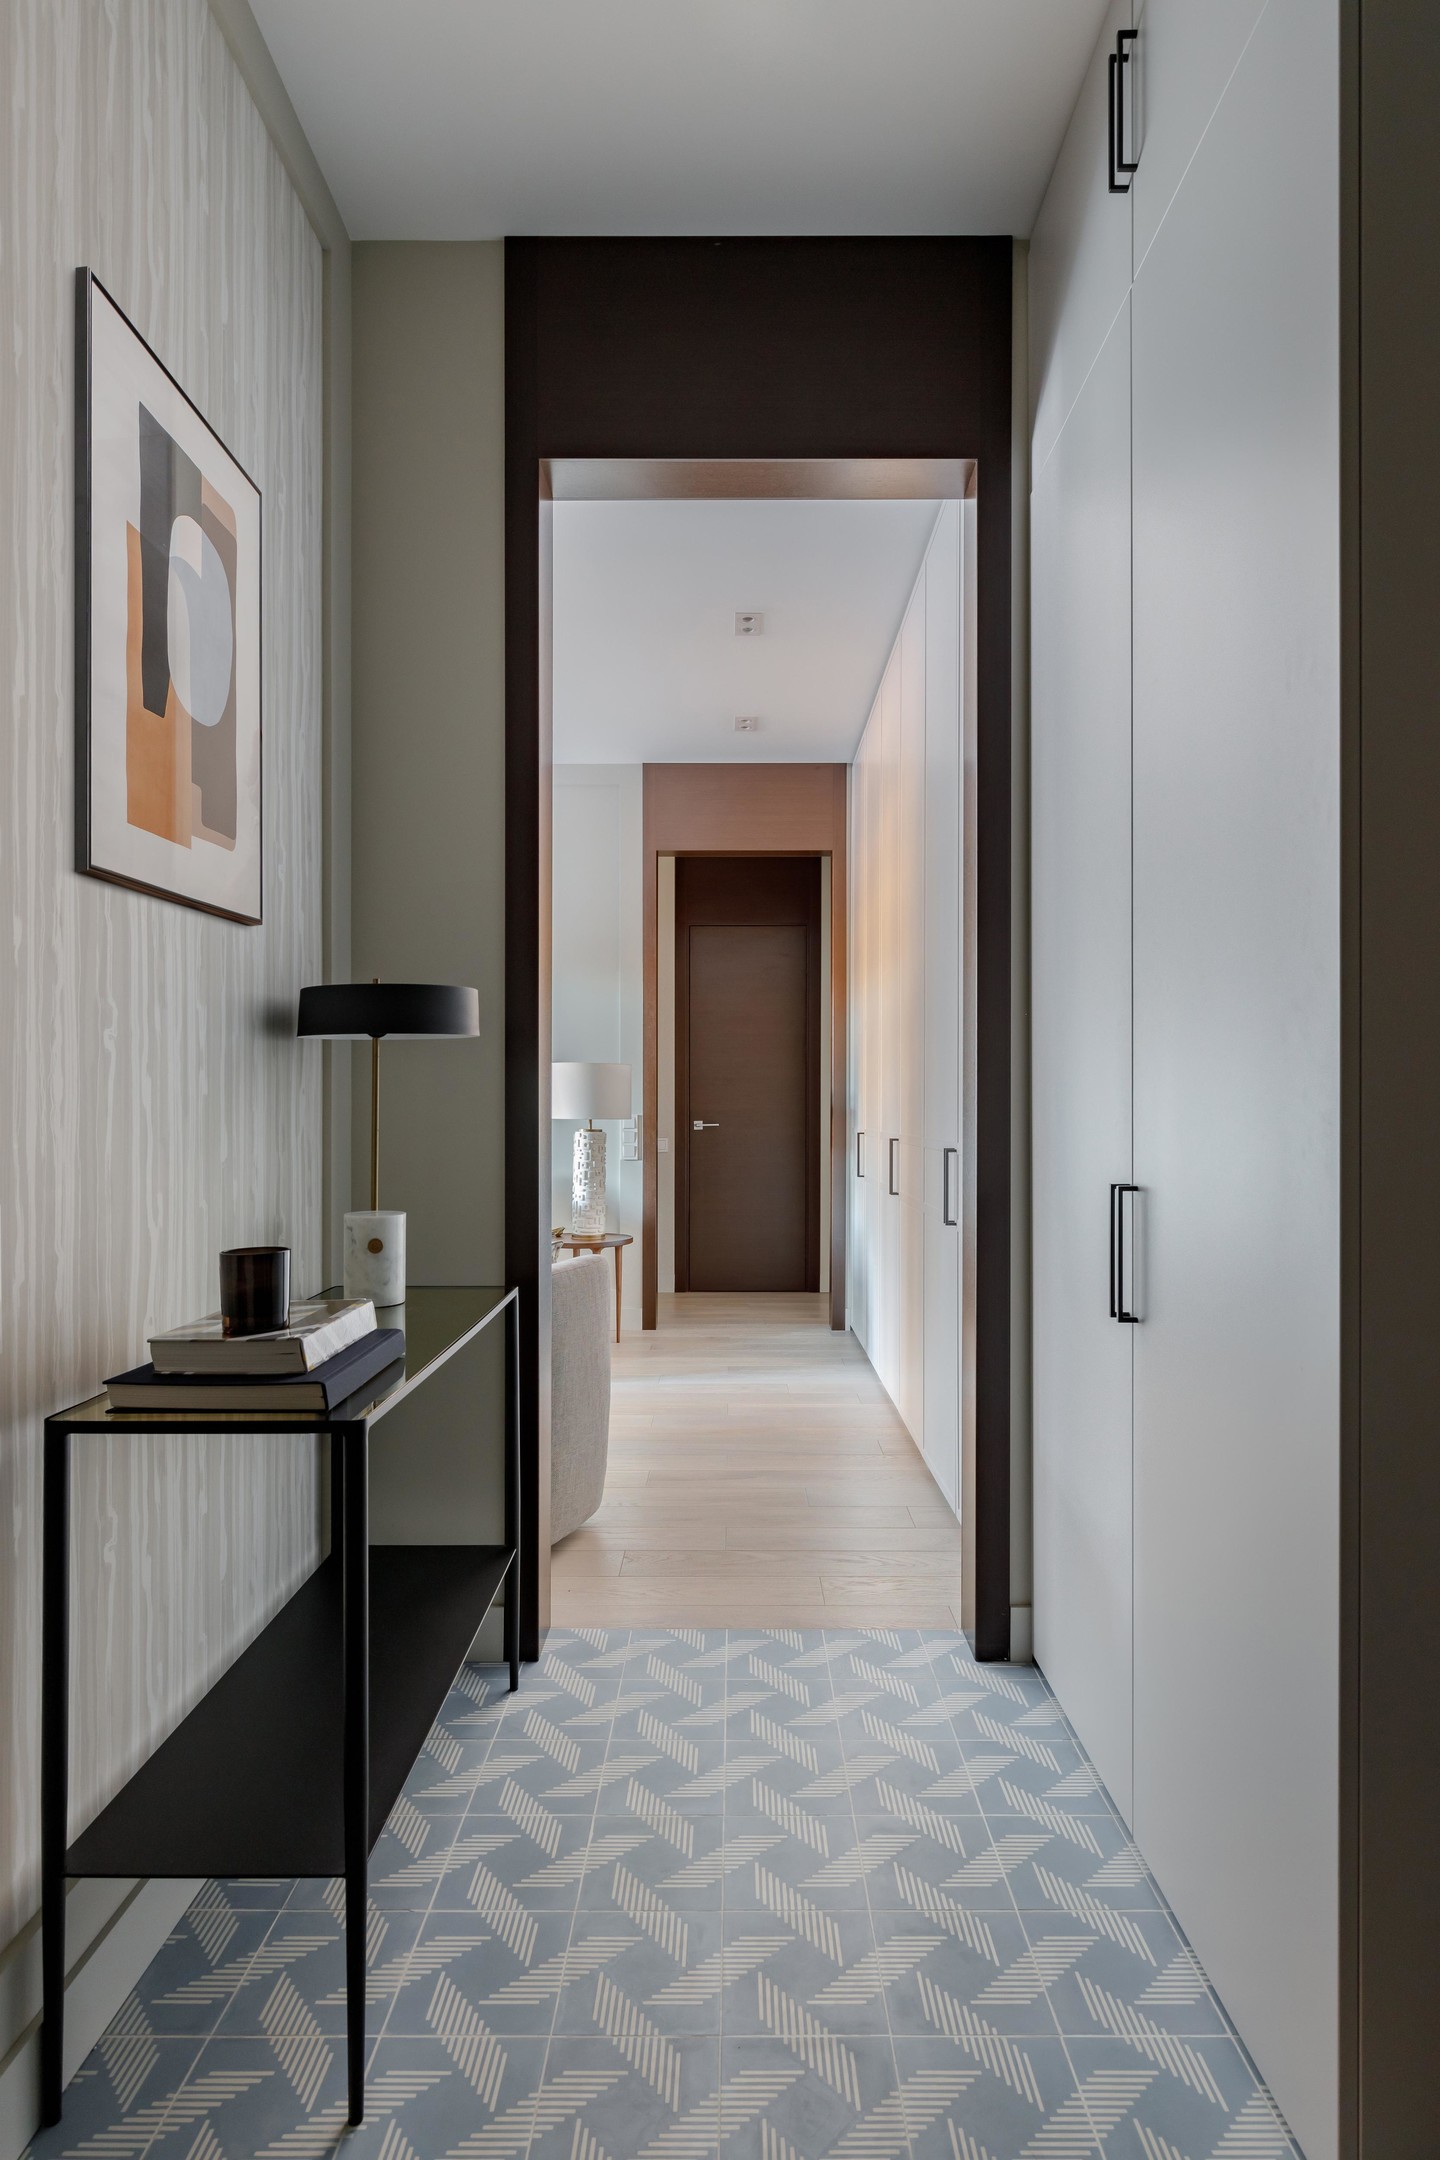 Tiền sảnh rộng lớn chiếm gần 1/4 căn hộ đã được Marina Novikova cải tạo lại để tăng diện tích cho phòng tắm và mở rộng đáng kể phòng khách. Sàn nhà lát gạch bông màu xanh lam và trắng, phân vùng với sàn gỗ của khu vực sinh hoạt chung.